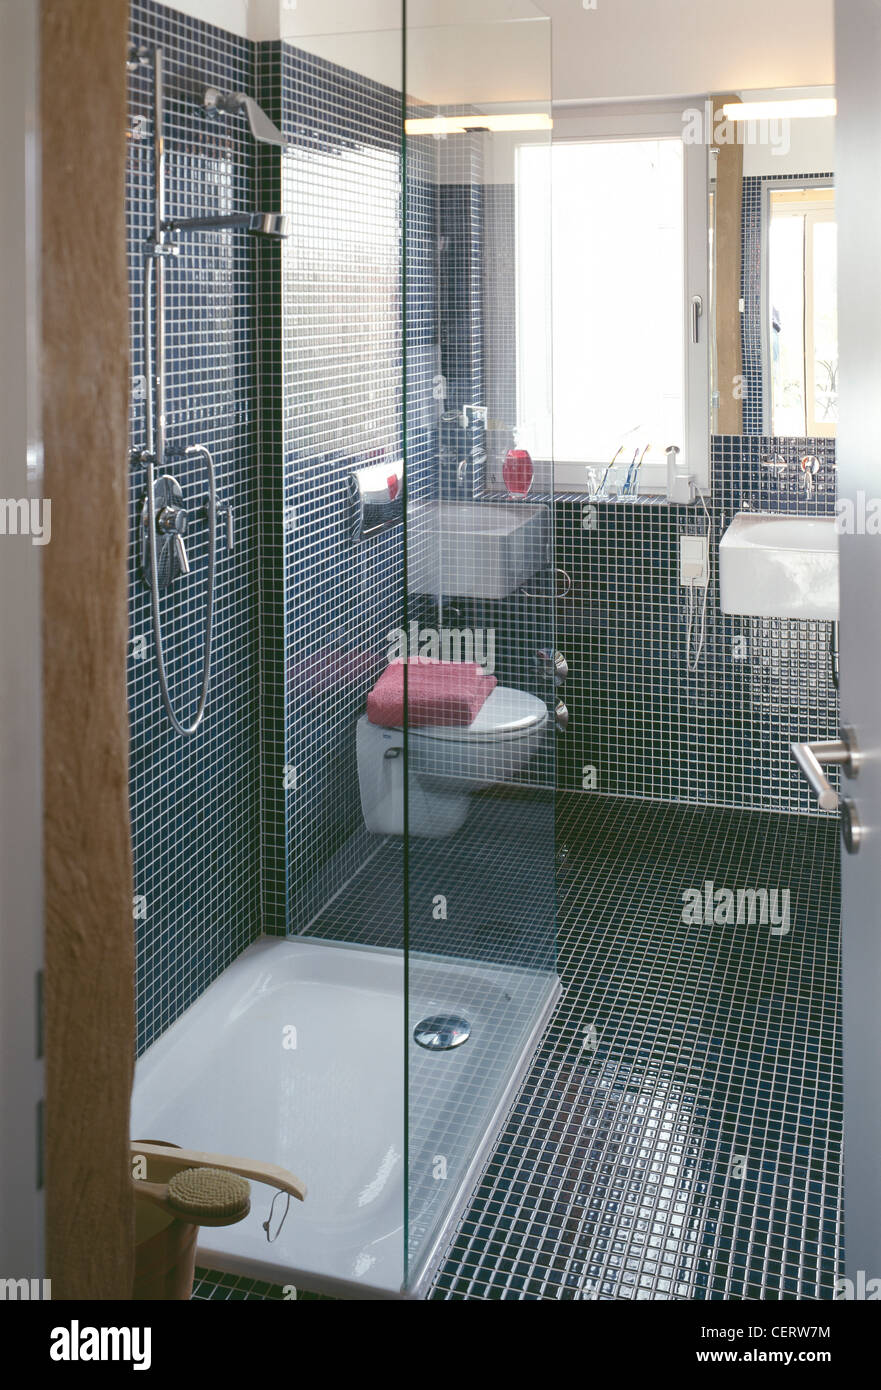 Modernes Bad Mosaik gefliesten Floand Wände, Gehäuse weiß Tablett und Glas  Duschwand, Chrom Dusche, weiße Toilette und Stockfotografie - Alamy